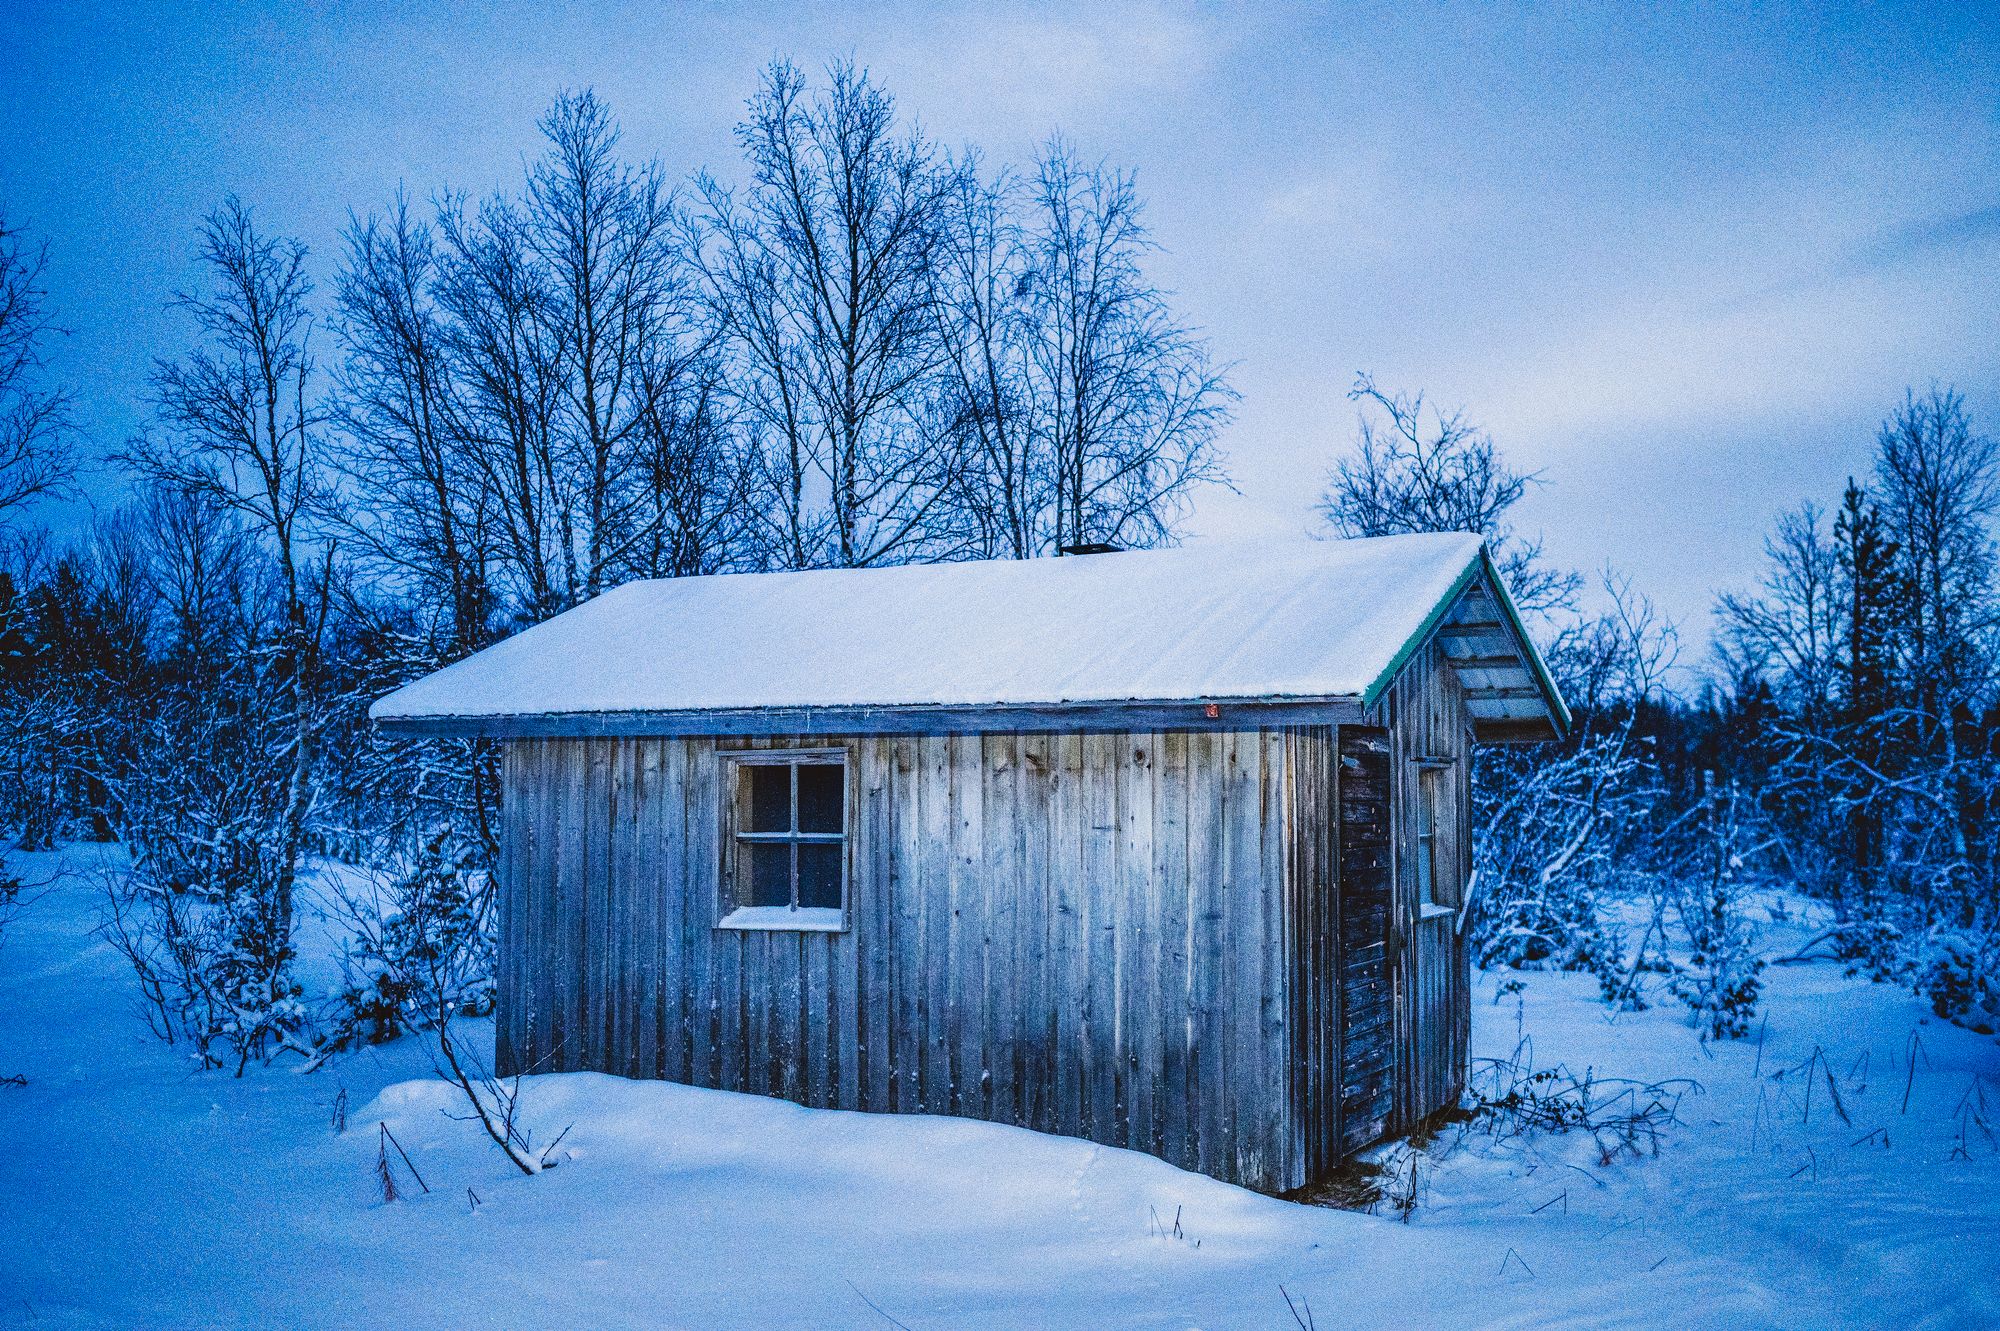 Korsatuvan autiotuvan pihapiirissä on myös puulämmitteinen sauna. Tällä kertaa löylyt jäivät väliin. © Otto Ponto